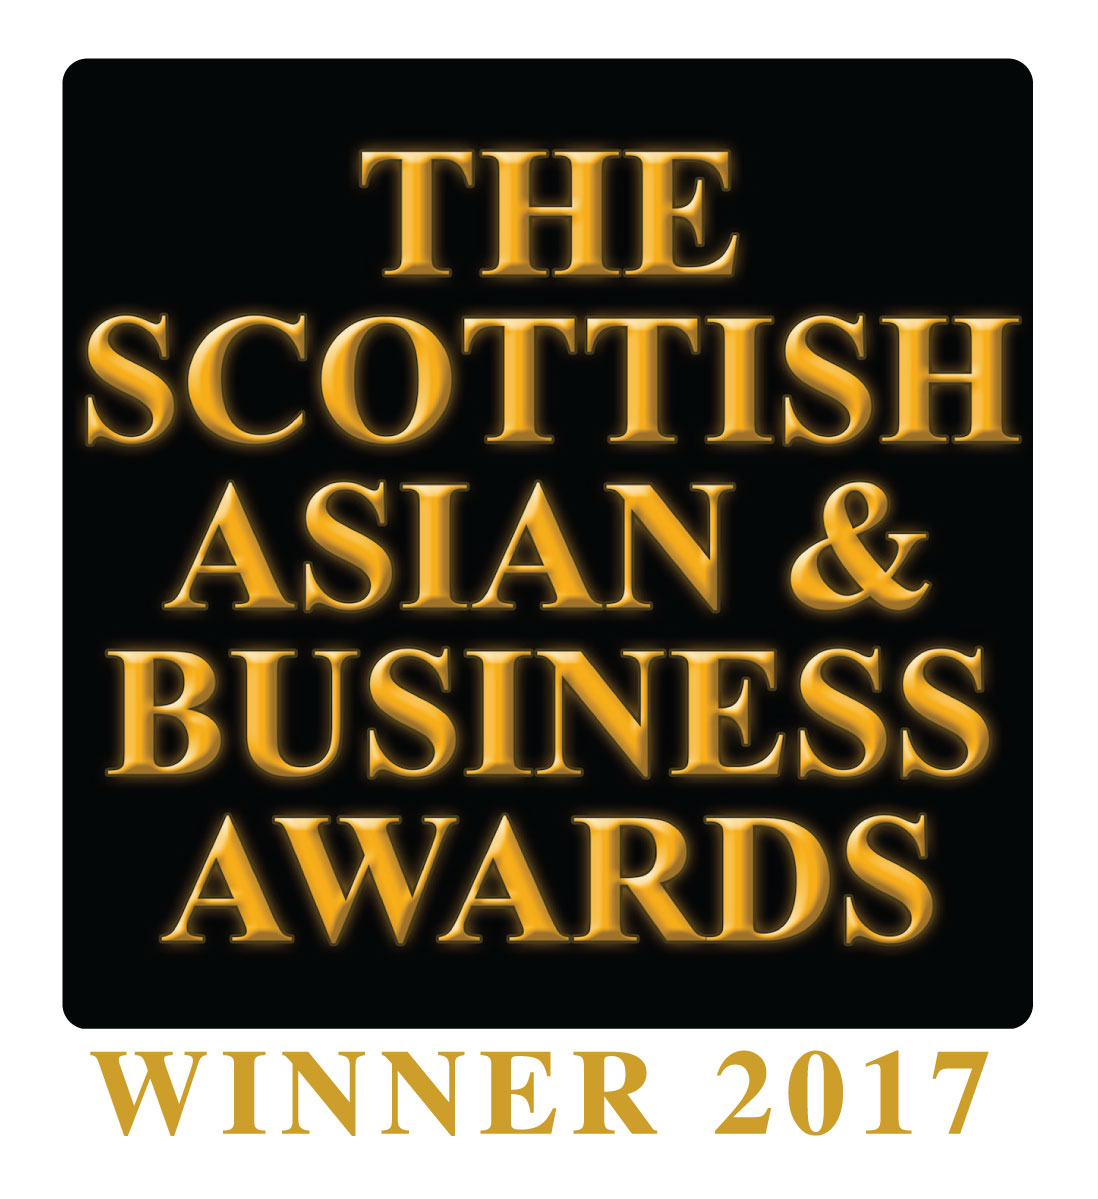 https://walegal.co.uk/wp-content/uploads/2020/07/Winner-Logo-_-Scottish-Asian-Business-Awards-2017-01-1.jpg